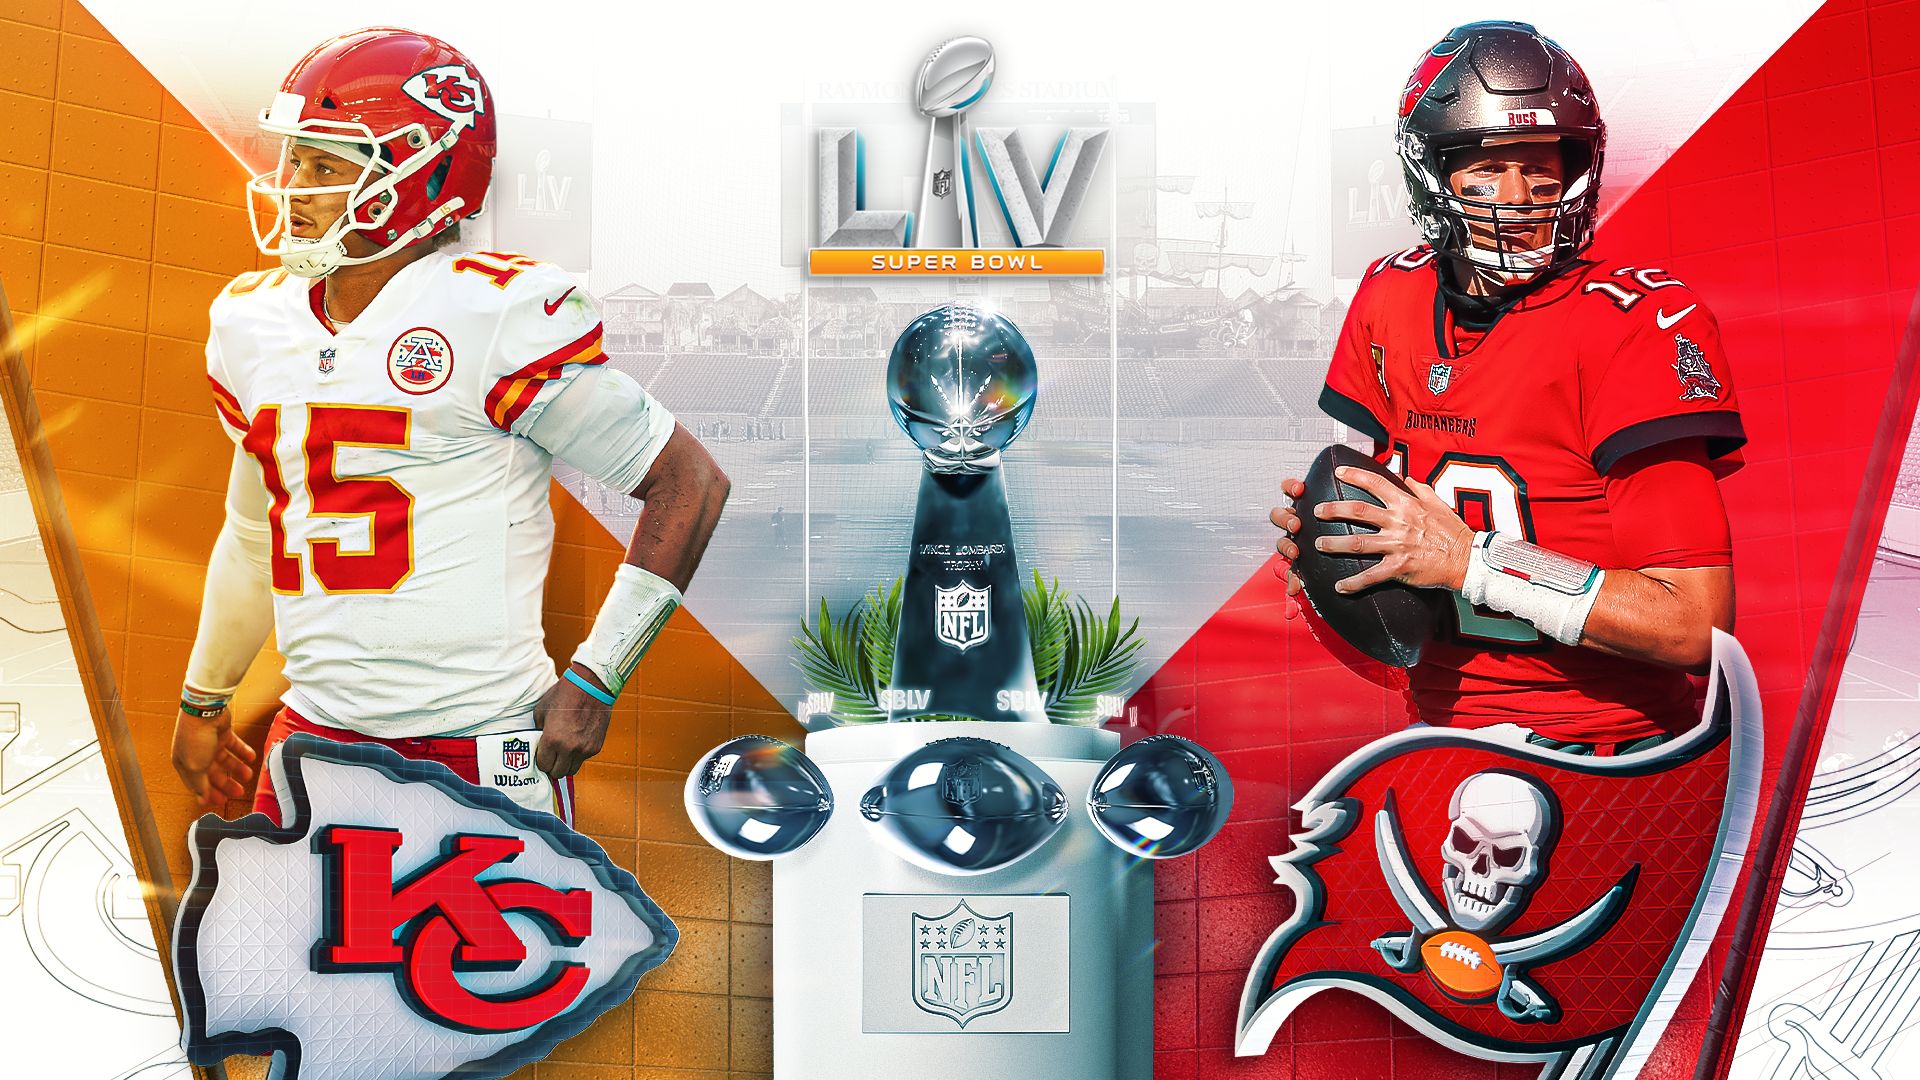 Super Bowl LV wallpaper